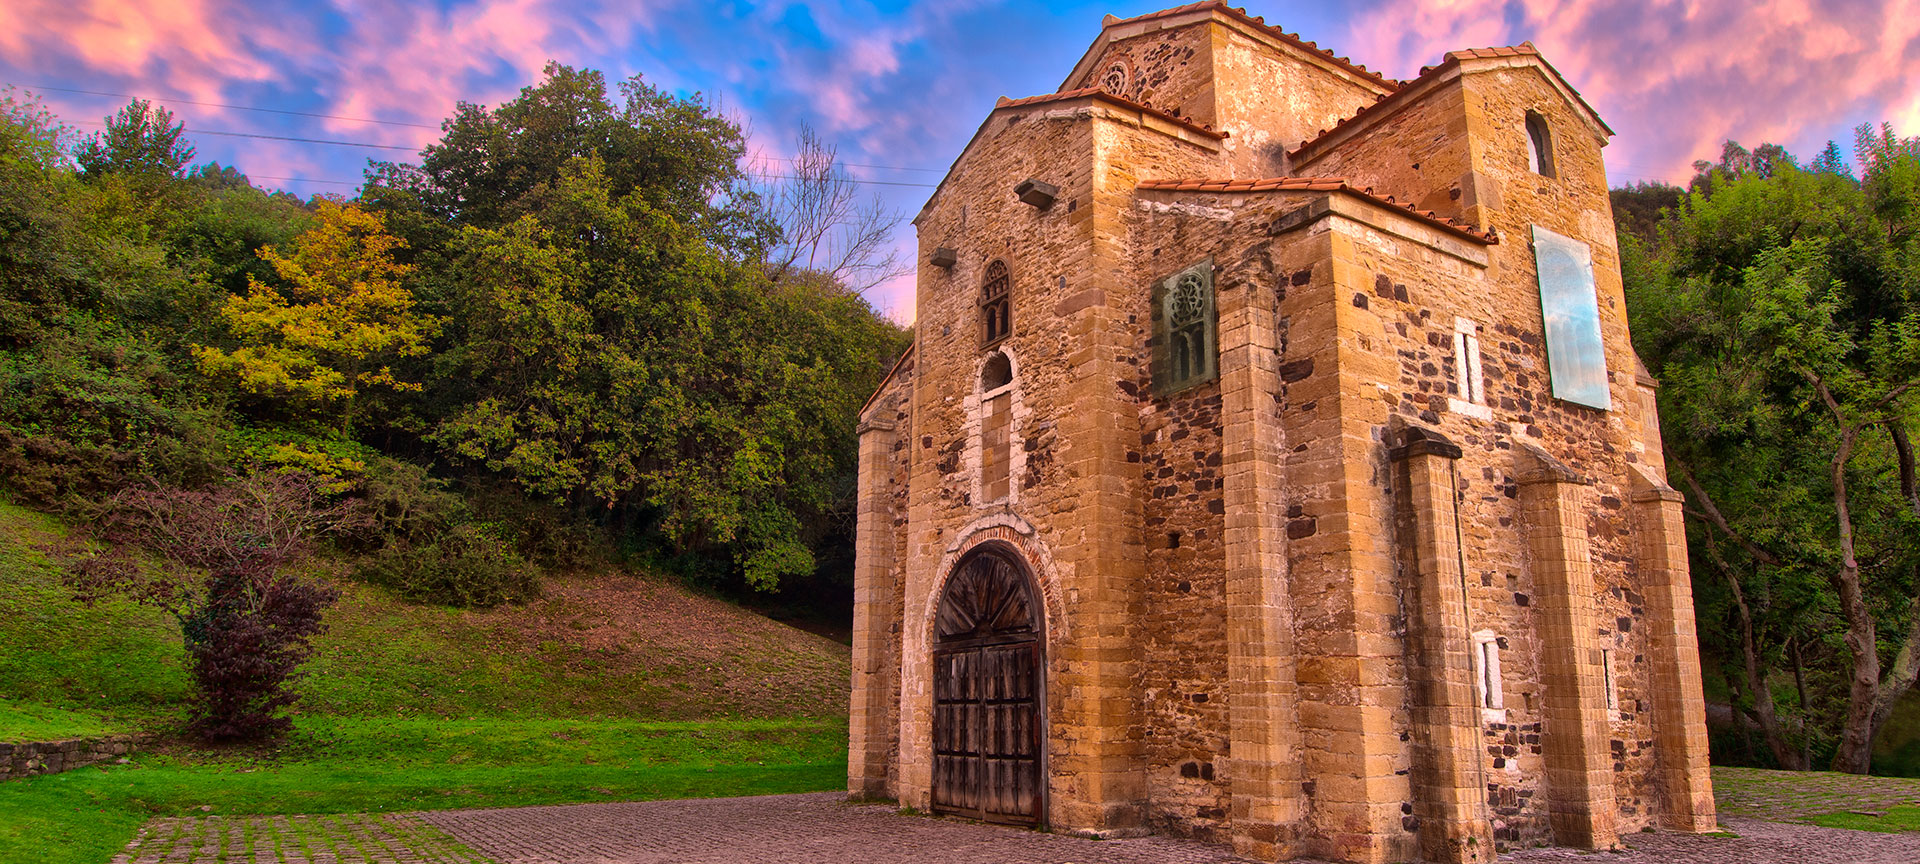 Chiesa di San Miguel de Lillo a Oviedo | spain.info